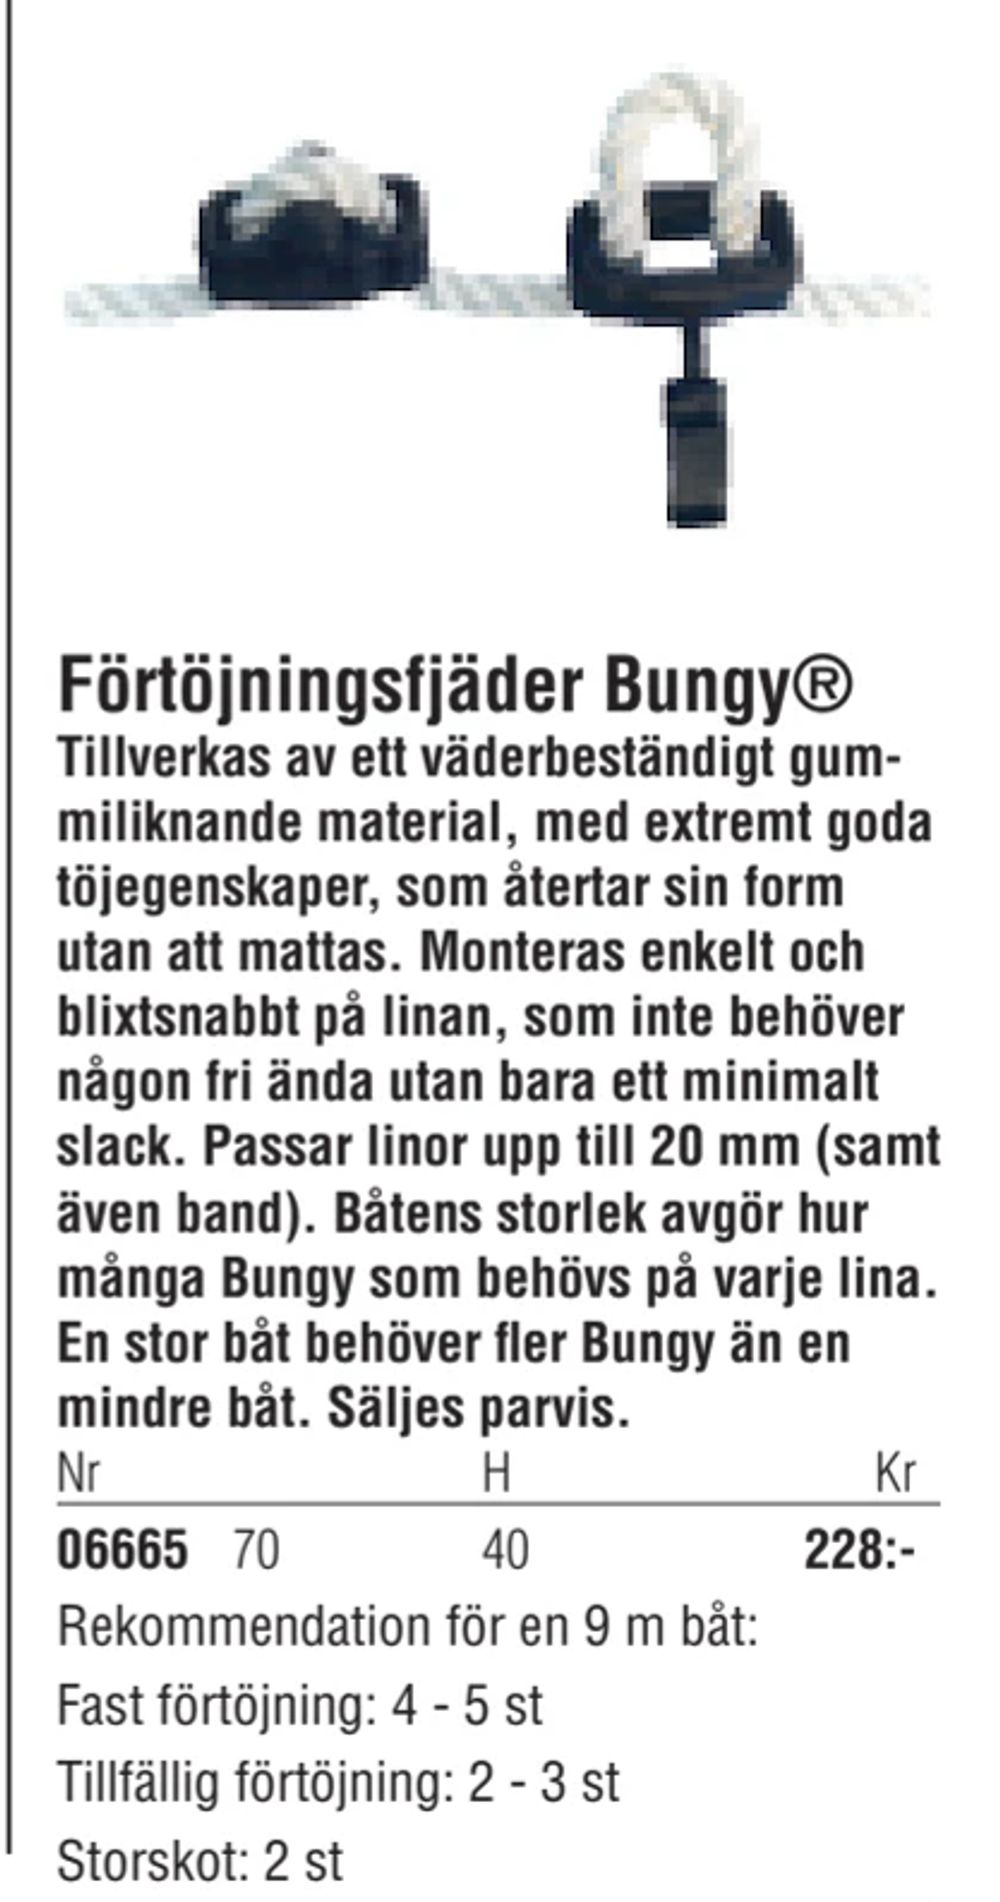 Erbjudanden på Förtöjningsfjäder Bungy® från Erlandsons Brygga för 228 kr